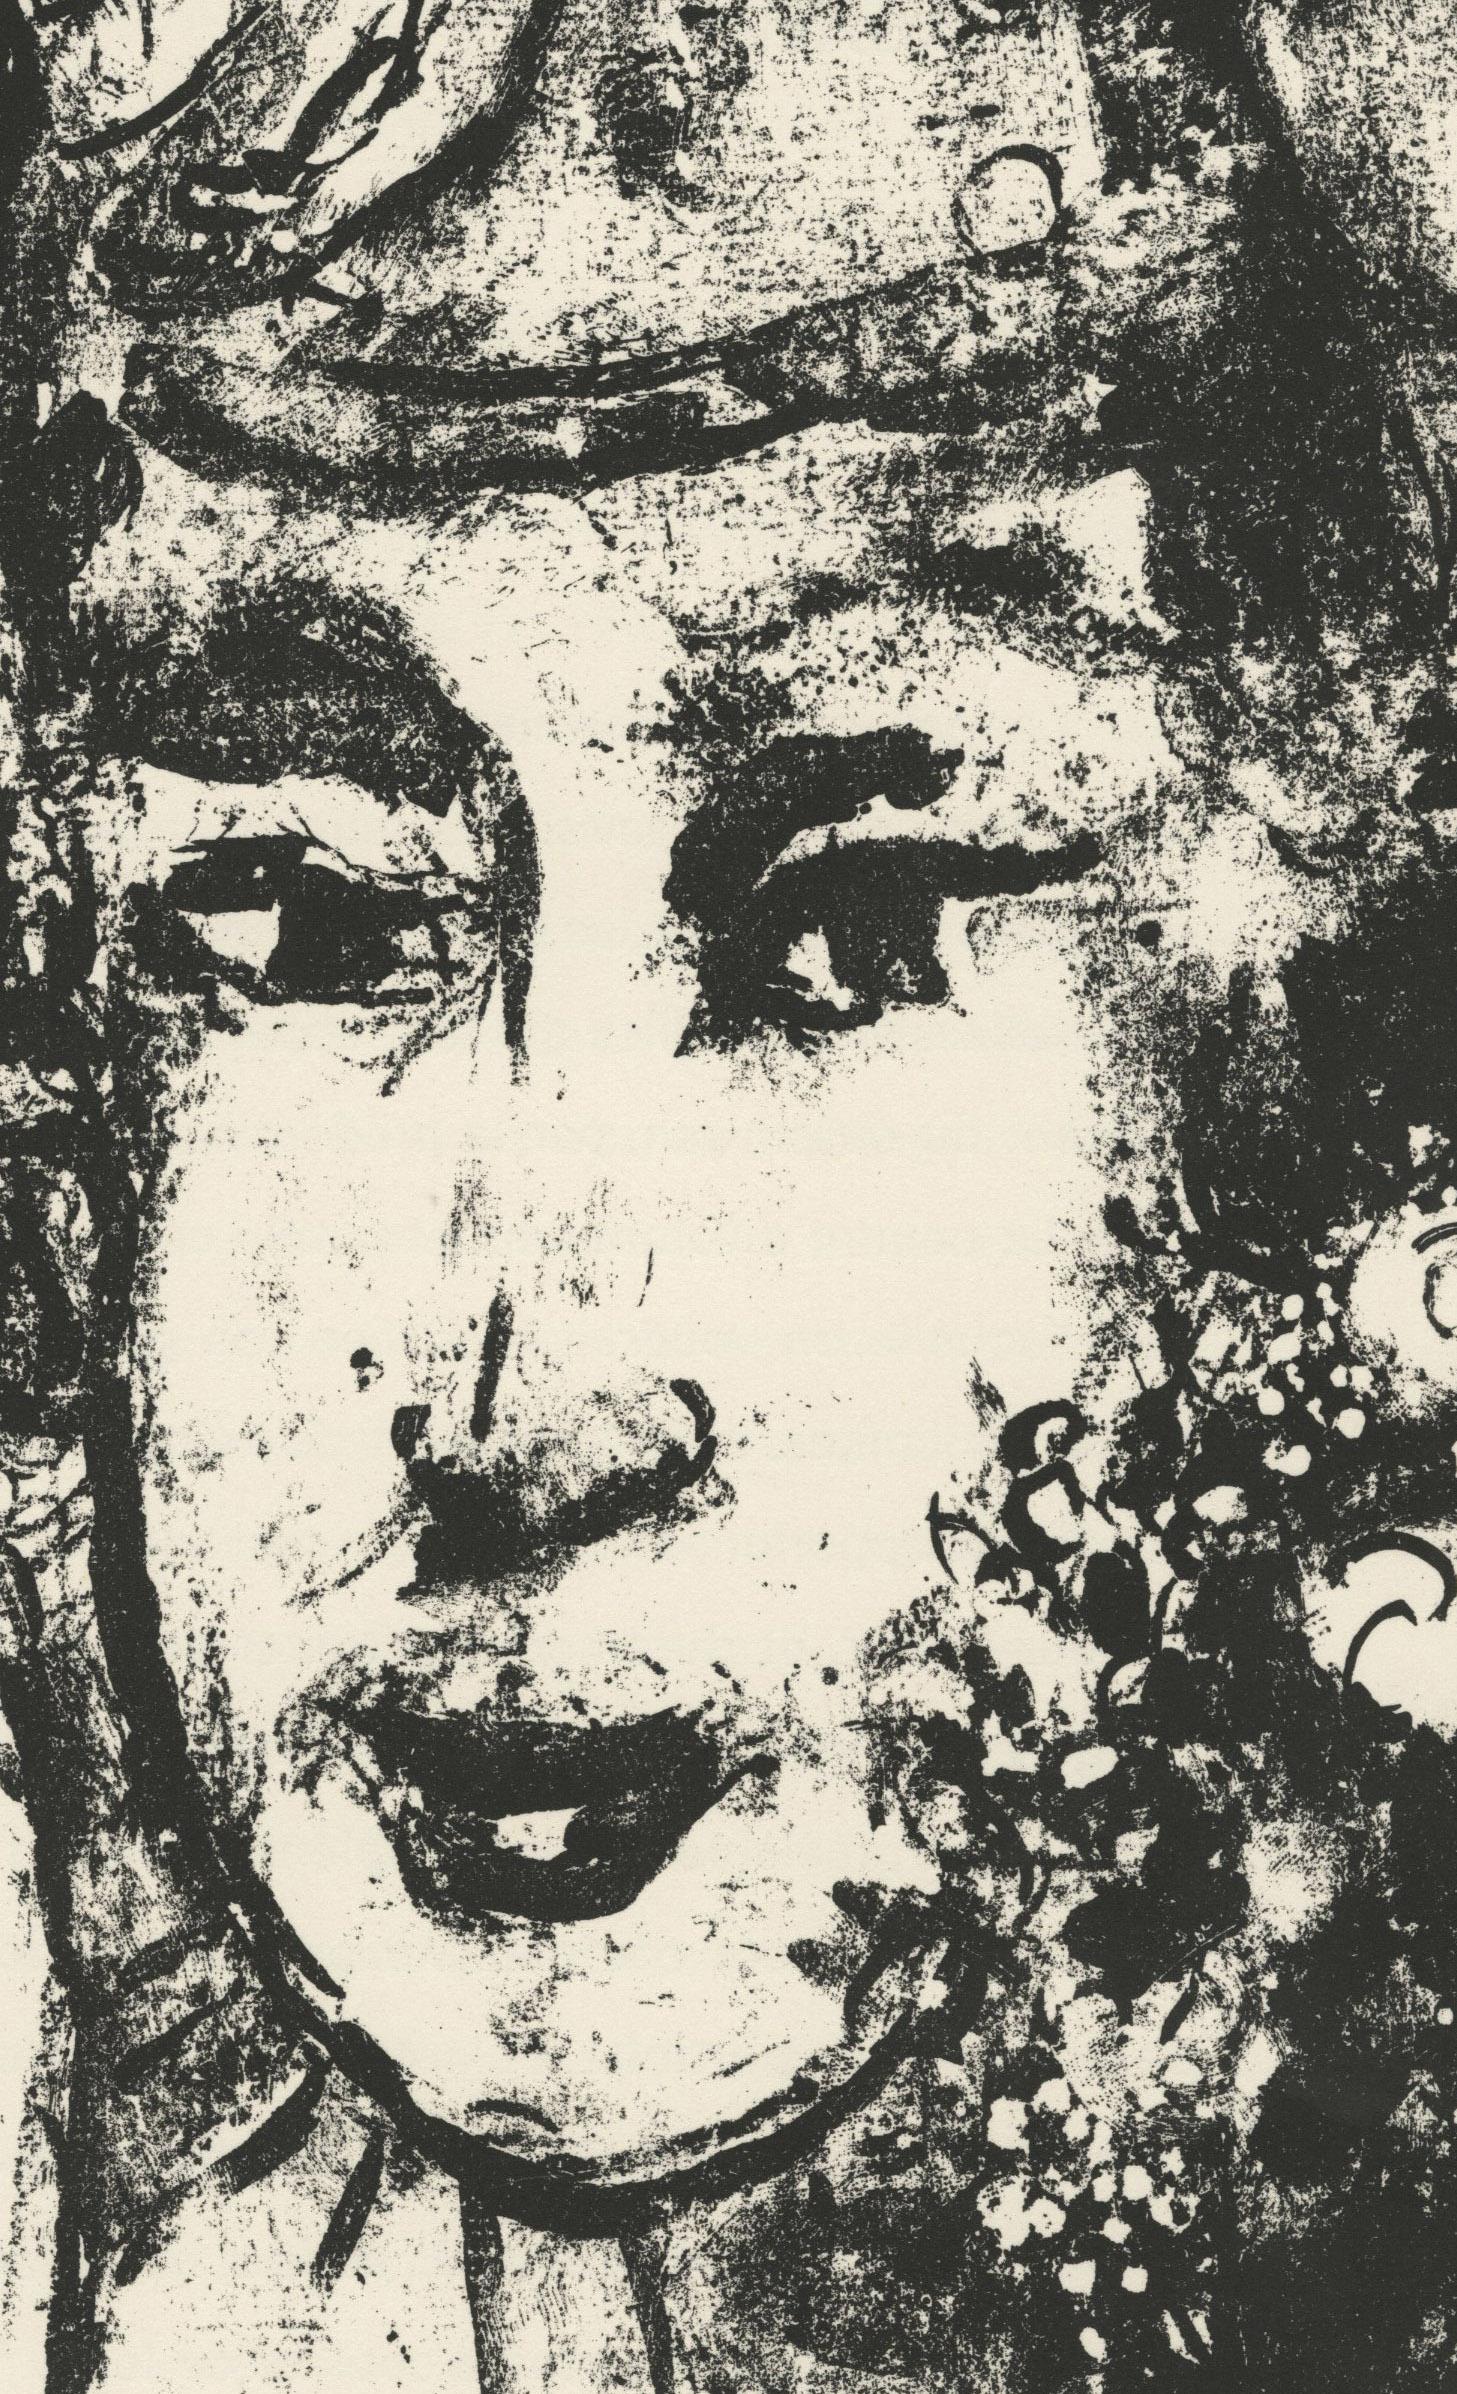 Le Clown Blanc (Le Clown Blanc)
Lithographie, 1964
Non signé (tel que délivré par DLM)
D'après : Derriere le Miroir Chagall : Dessins et Lavis, Exposition Chagall, Galeries Maeght, No. 146, 1964
Édition : Inconnue (grande)
Imprimé par Mourlot,